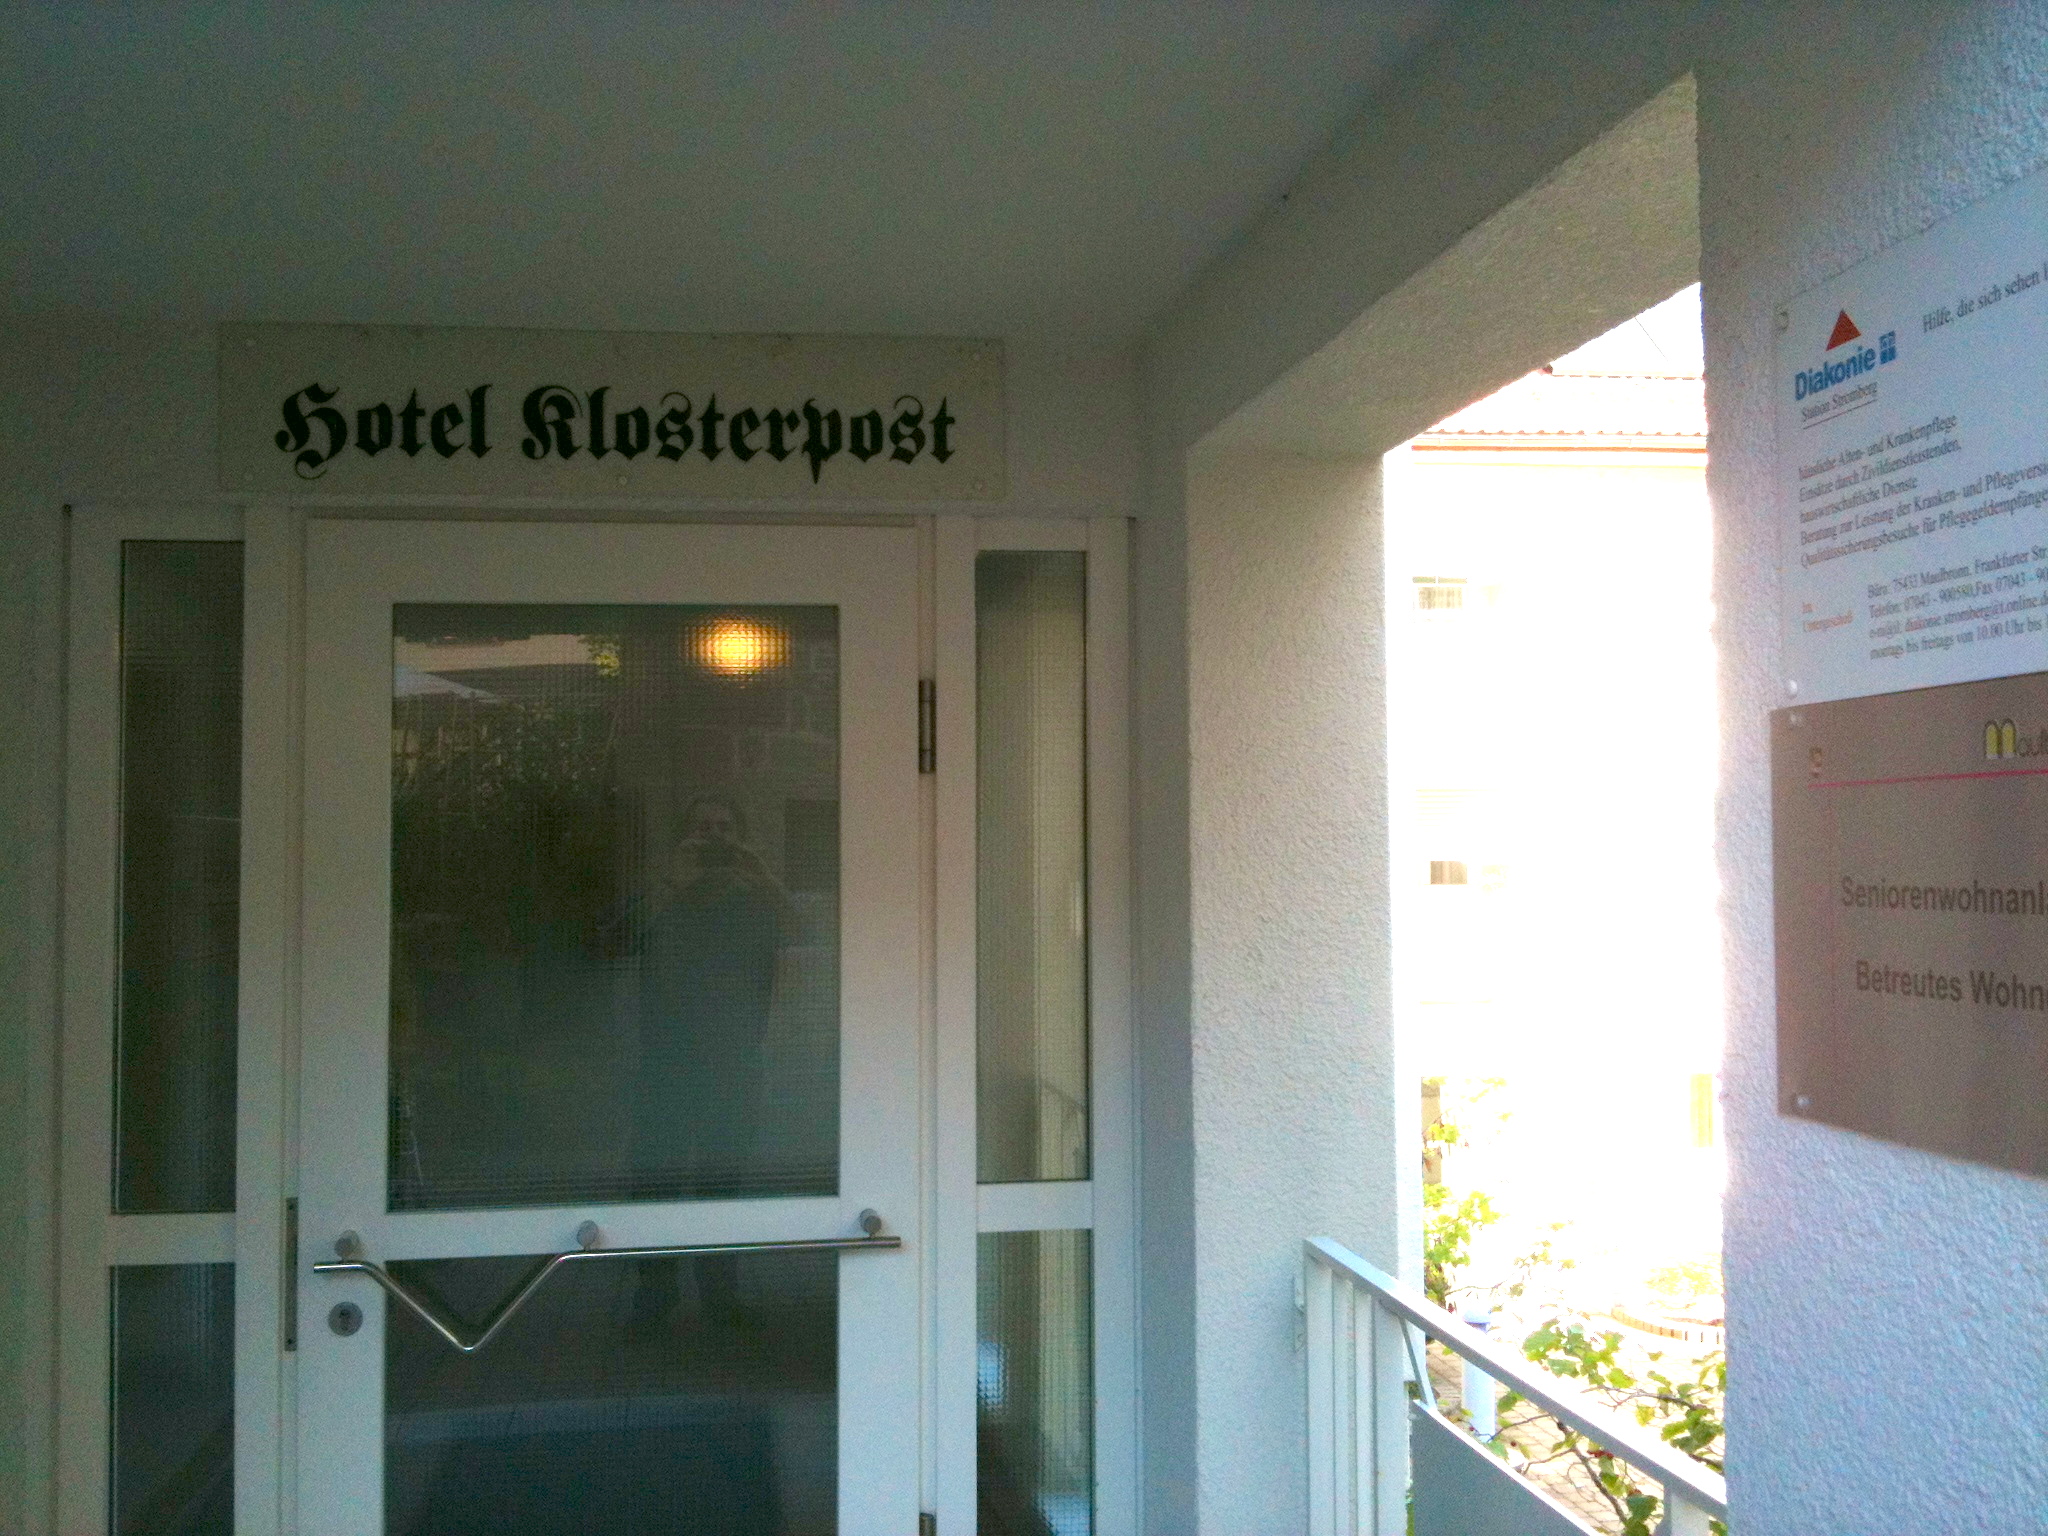 Bild 20 Hotel Klosterpost in Maulbronn